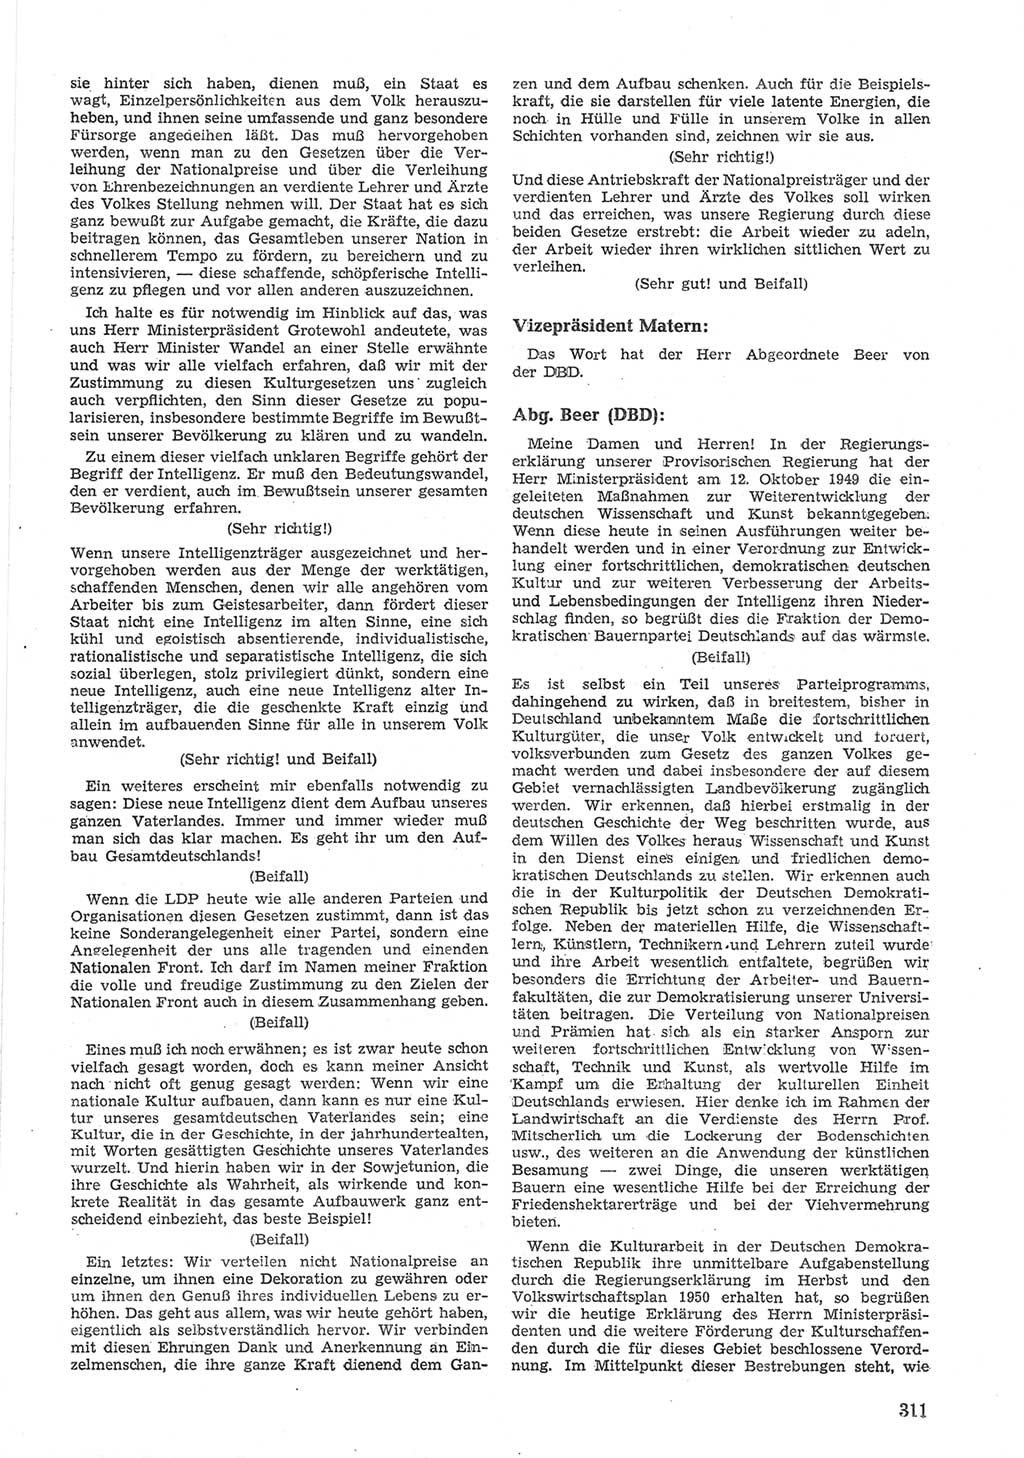 Provisorische Volkskammer (VK) der Deutschen Demokratischen Republik (DDR) 1949-1950, Dokument 325 (Prov. VK DDR 1949-1950, Dok. 325)